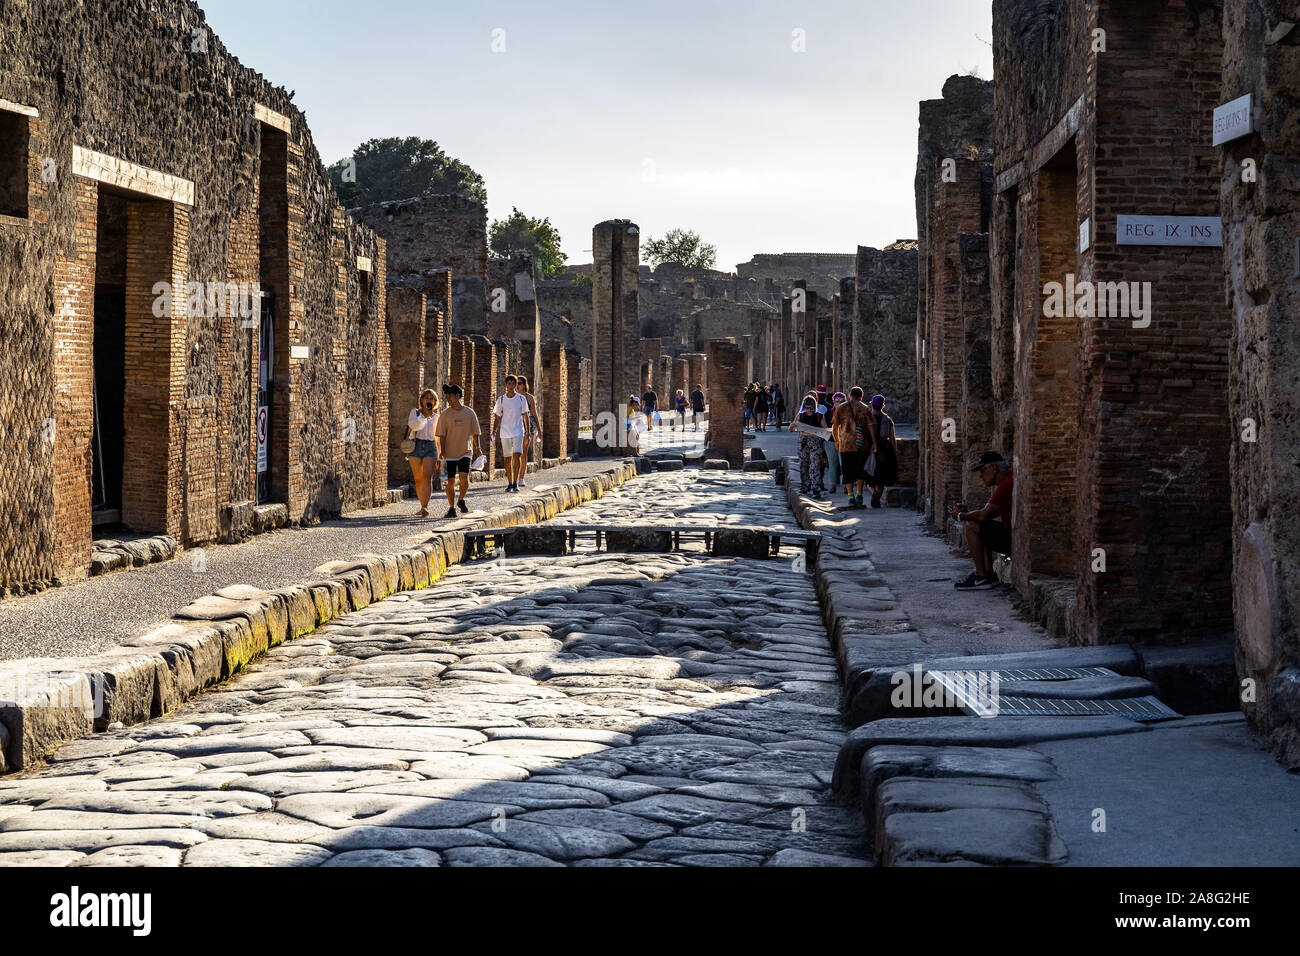 Via dell'abbondanza est une pierre de la rue pavée pittoresque la ville romaine de Pompéi, un UNESCO World Heritage Site. Pompéi, Campanie, Italie, Octobre 2019 Banque D'Images